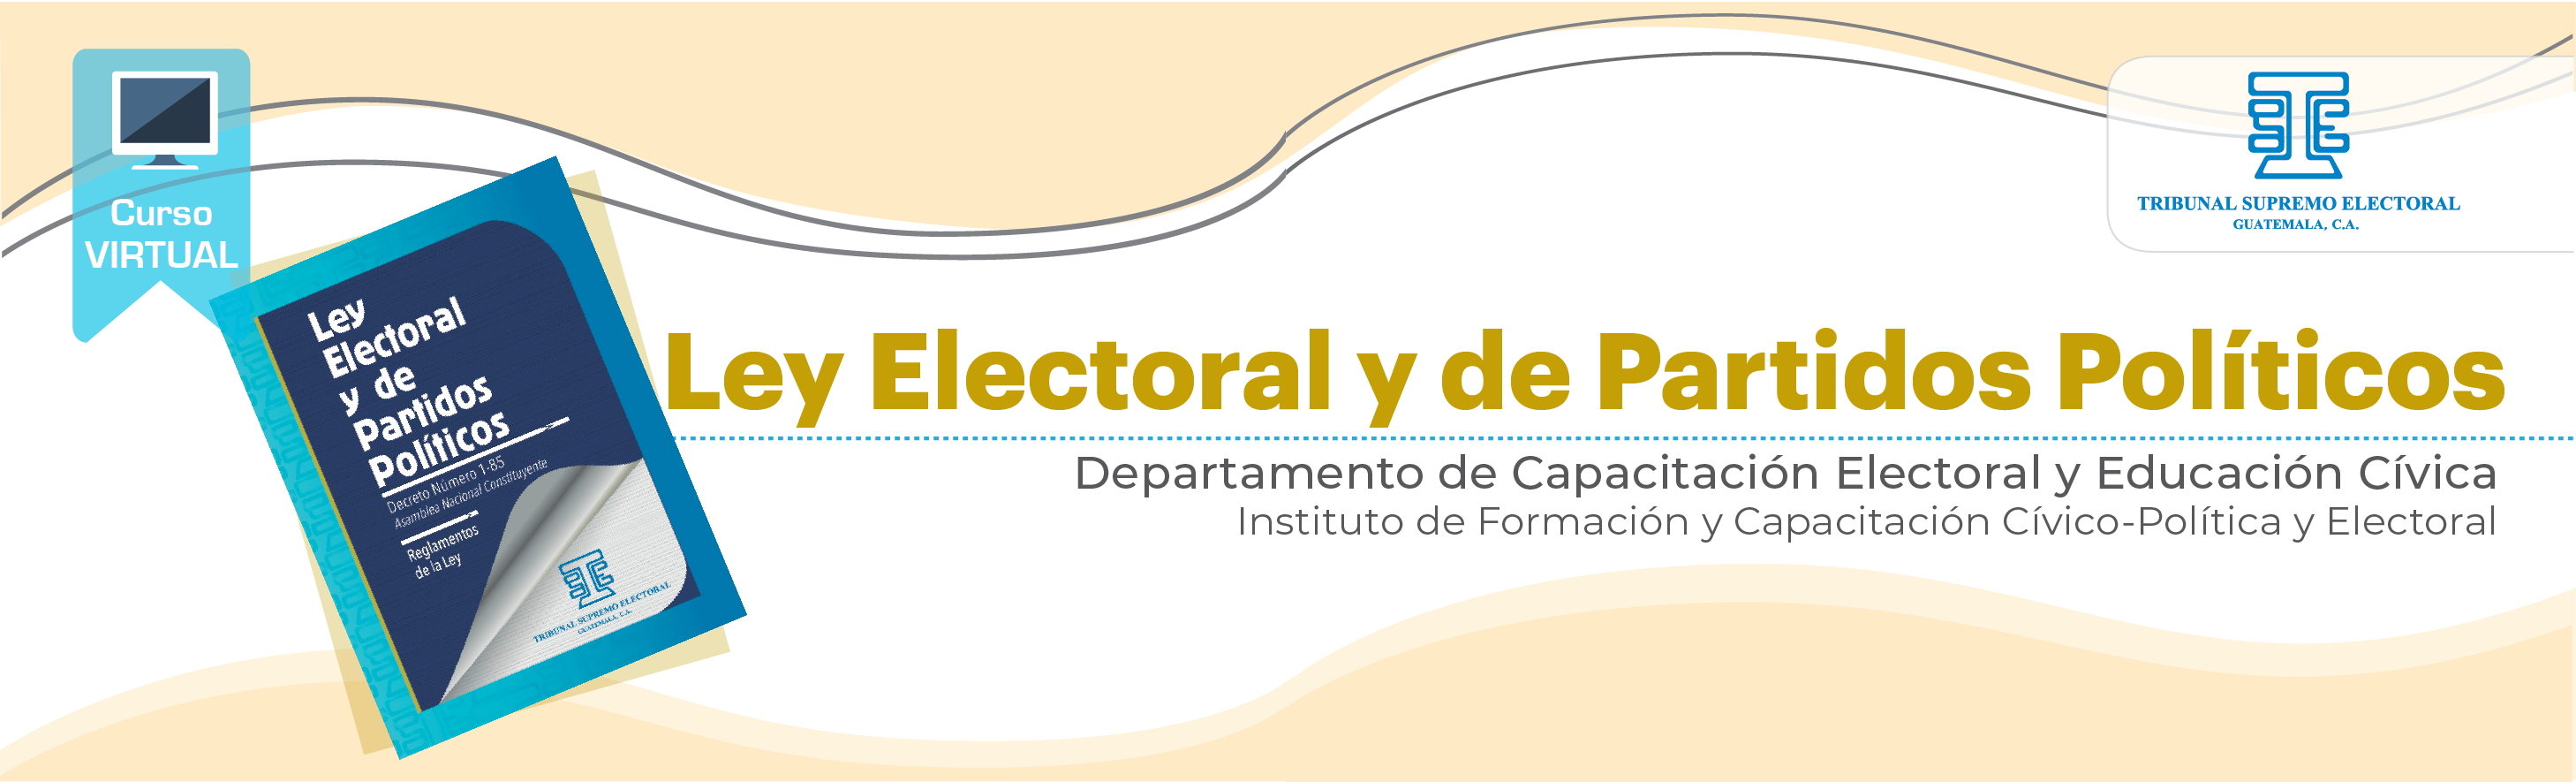 Ley Electoral y de Partidos Políticos 